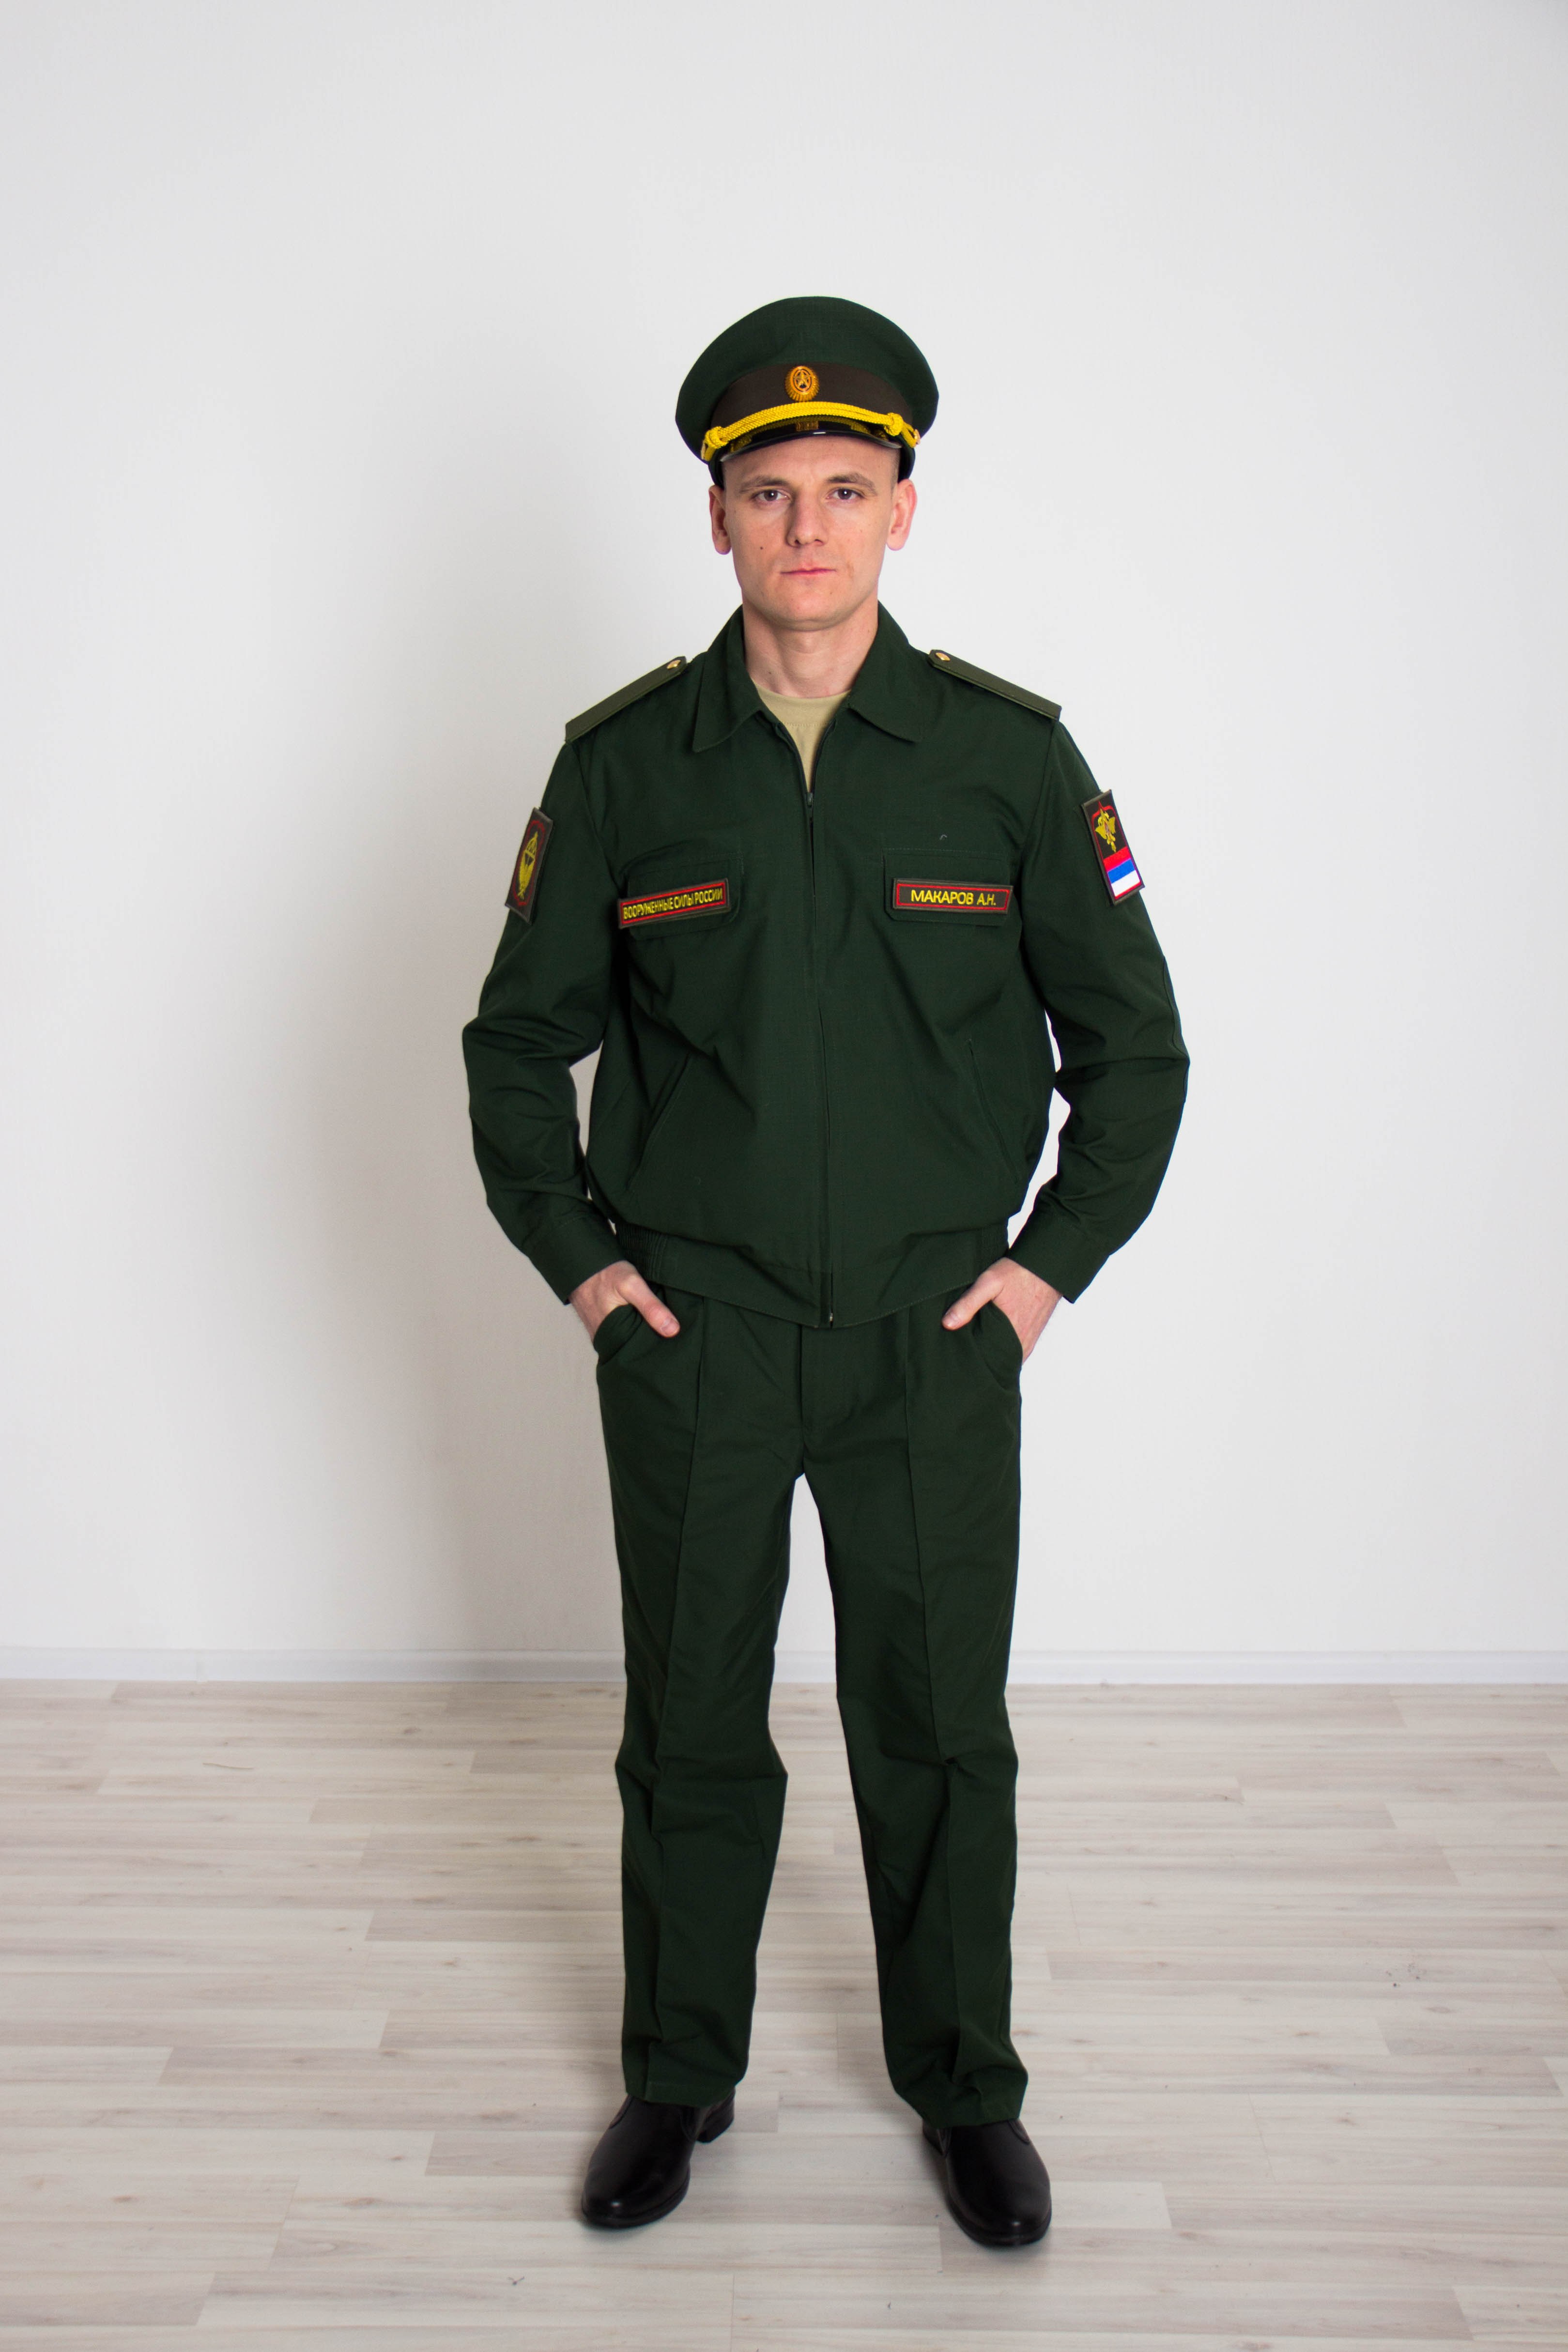 Войска форма одежды